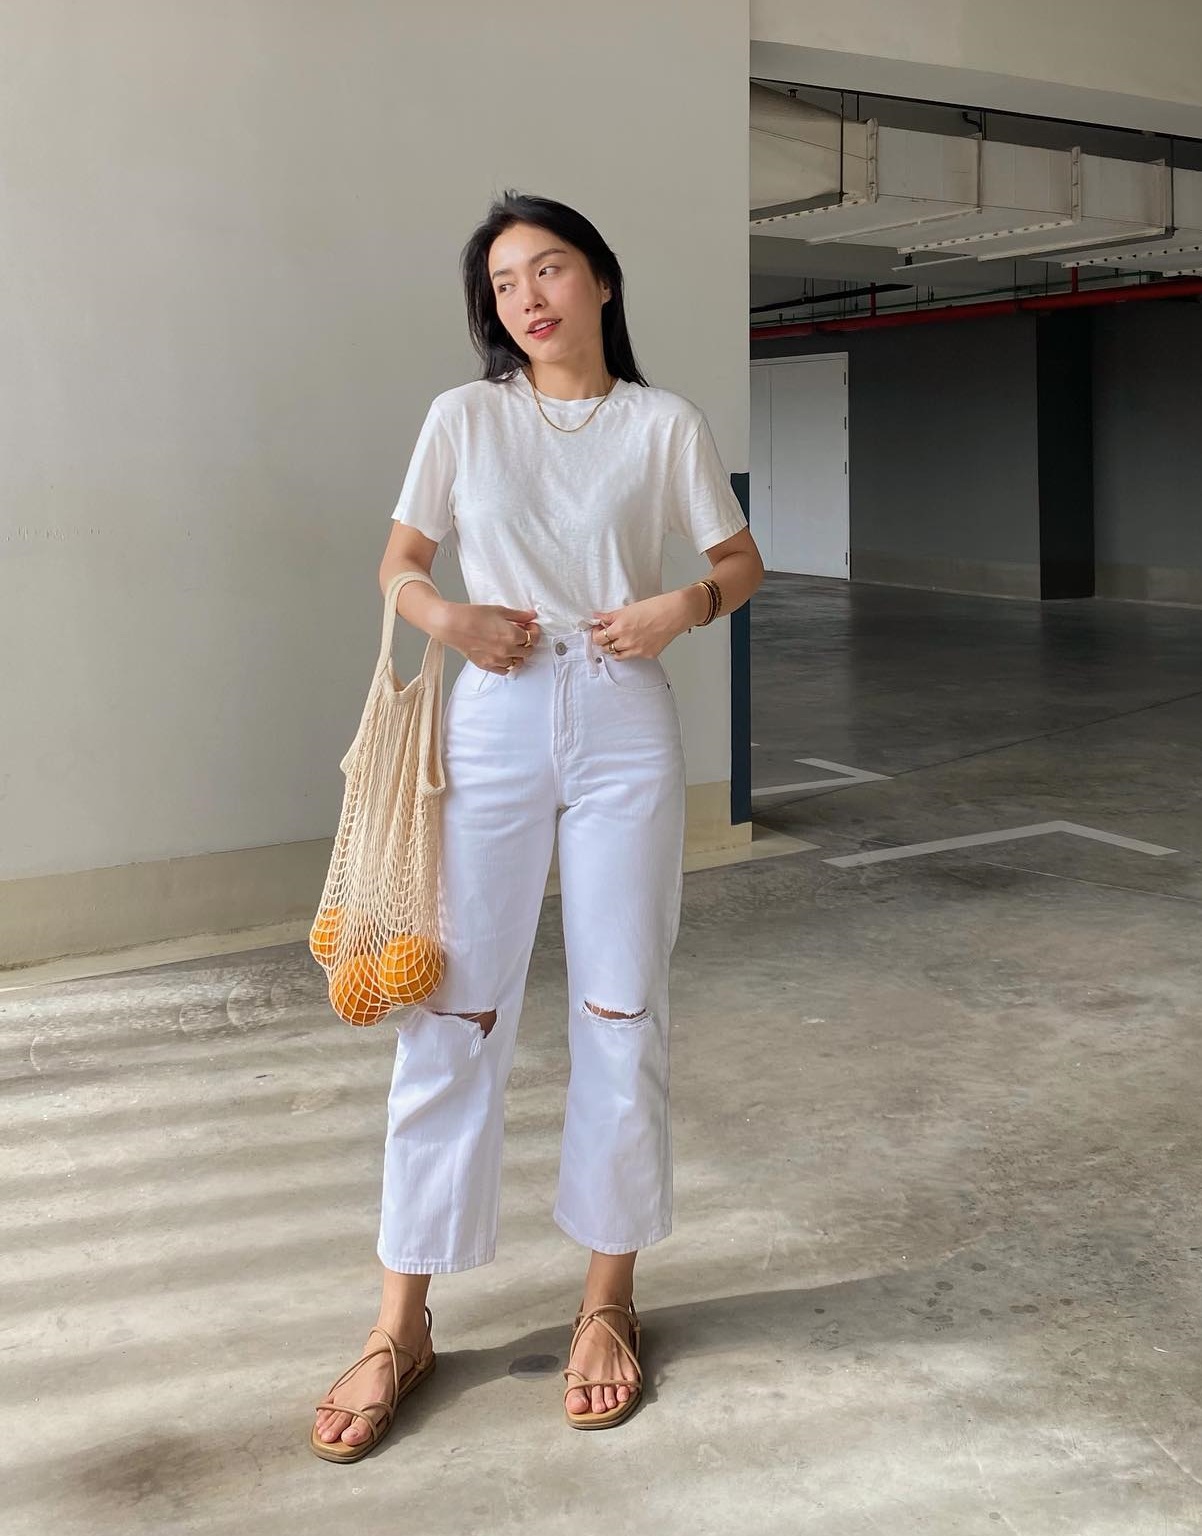 Cao 1m57, blogger Hà Trúc có 4 chiêu tôn dáng khi đi giày bệt-2